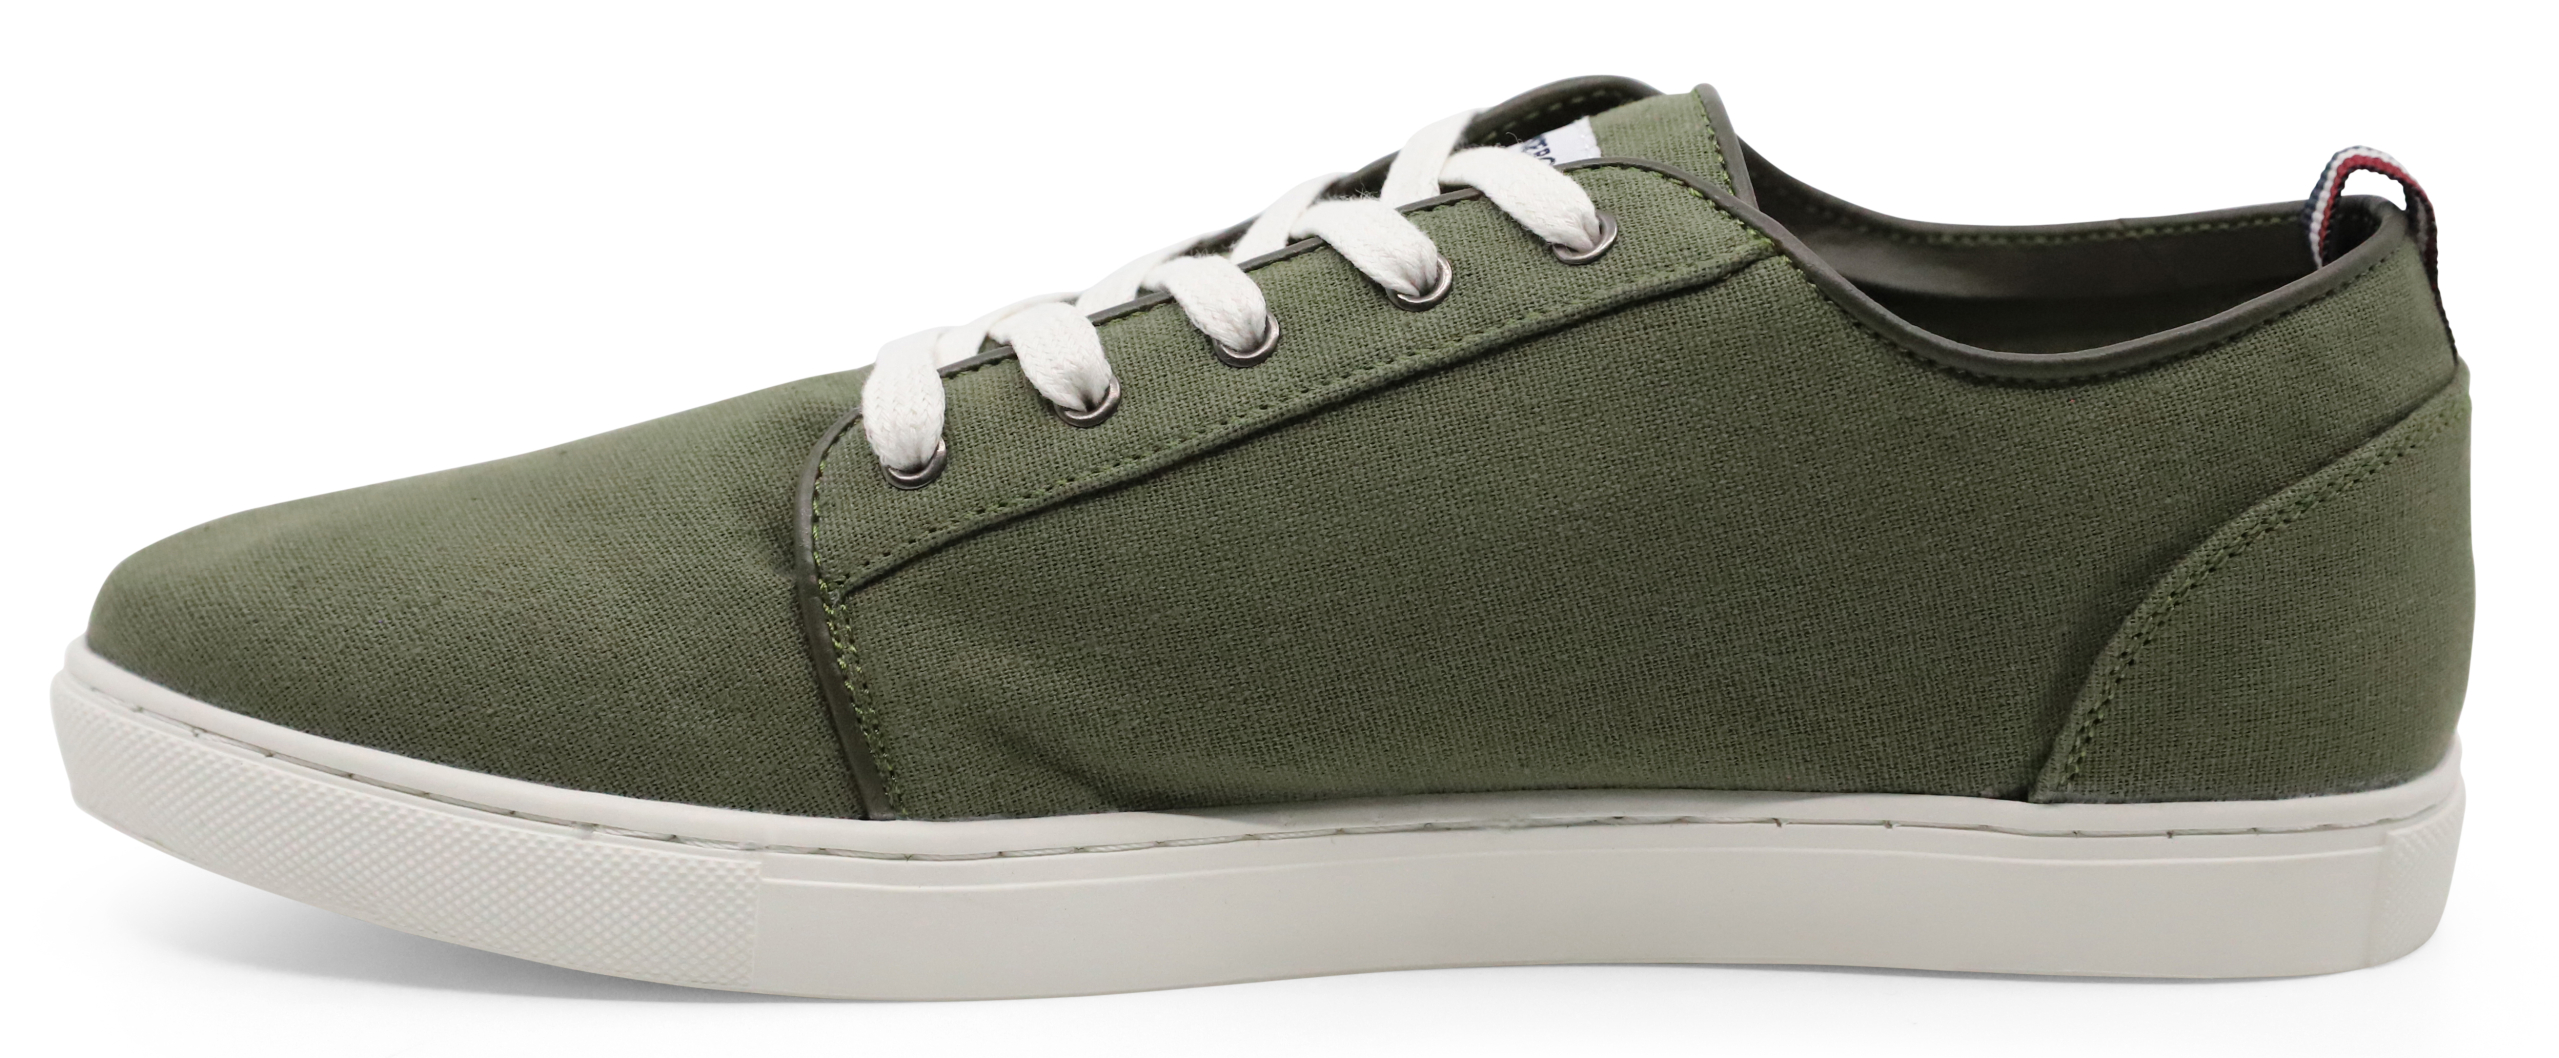 Lindbergh Sneakers grøn / army